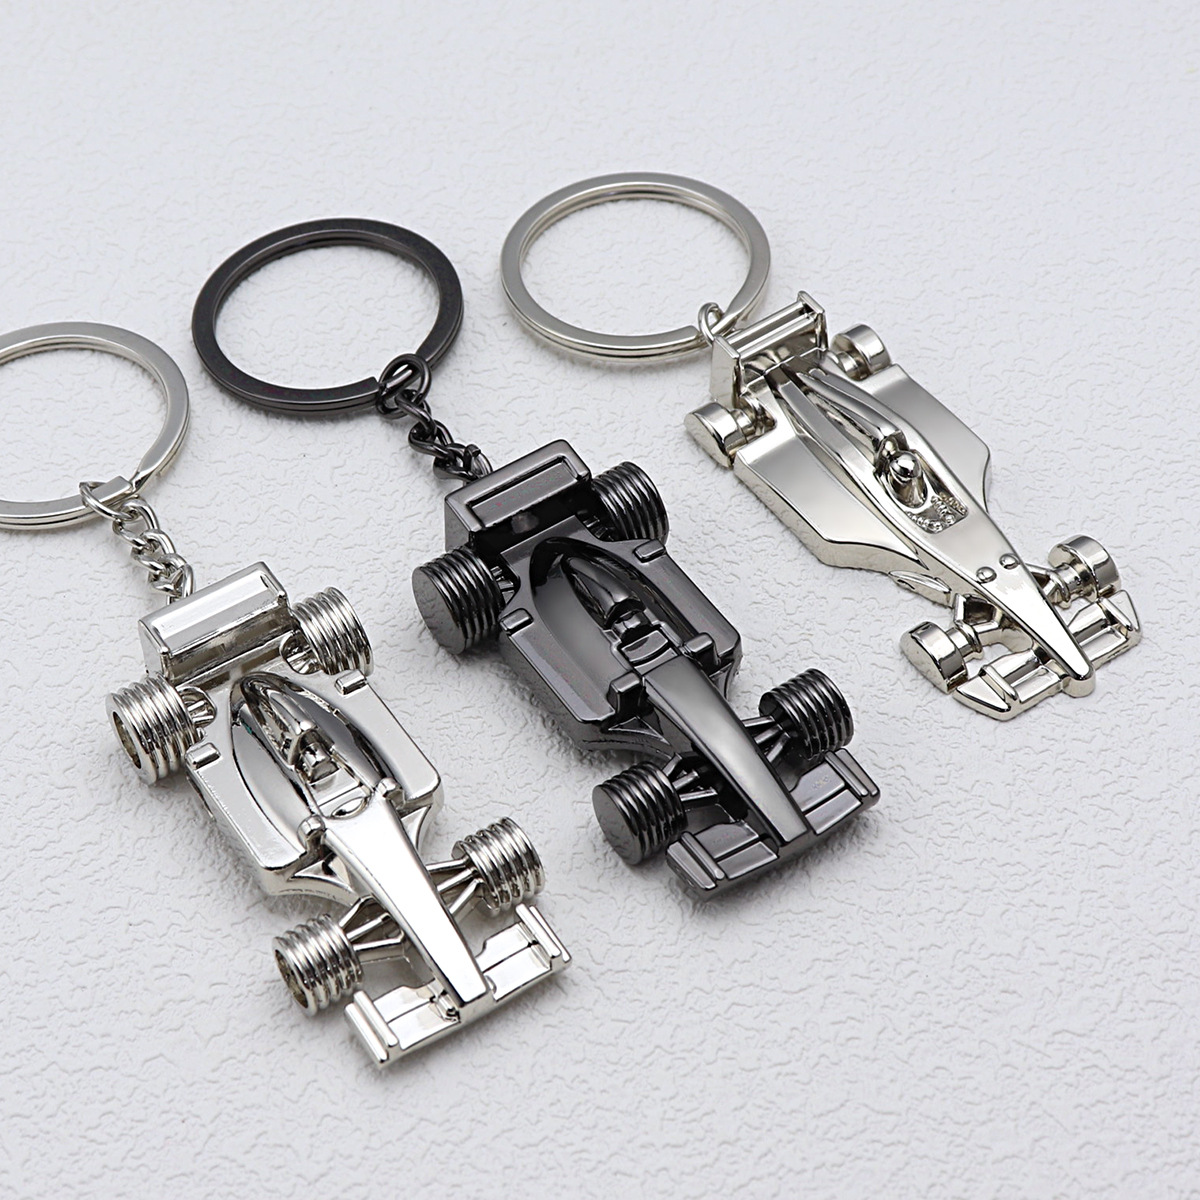 创意F1赛车钥匙扣挂件小礼品赛车俱乐部周边纪念品可激光定制LOGO